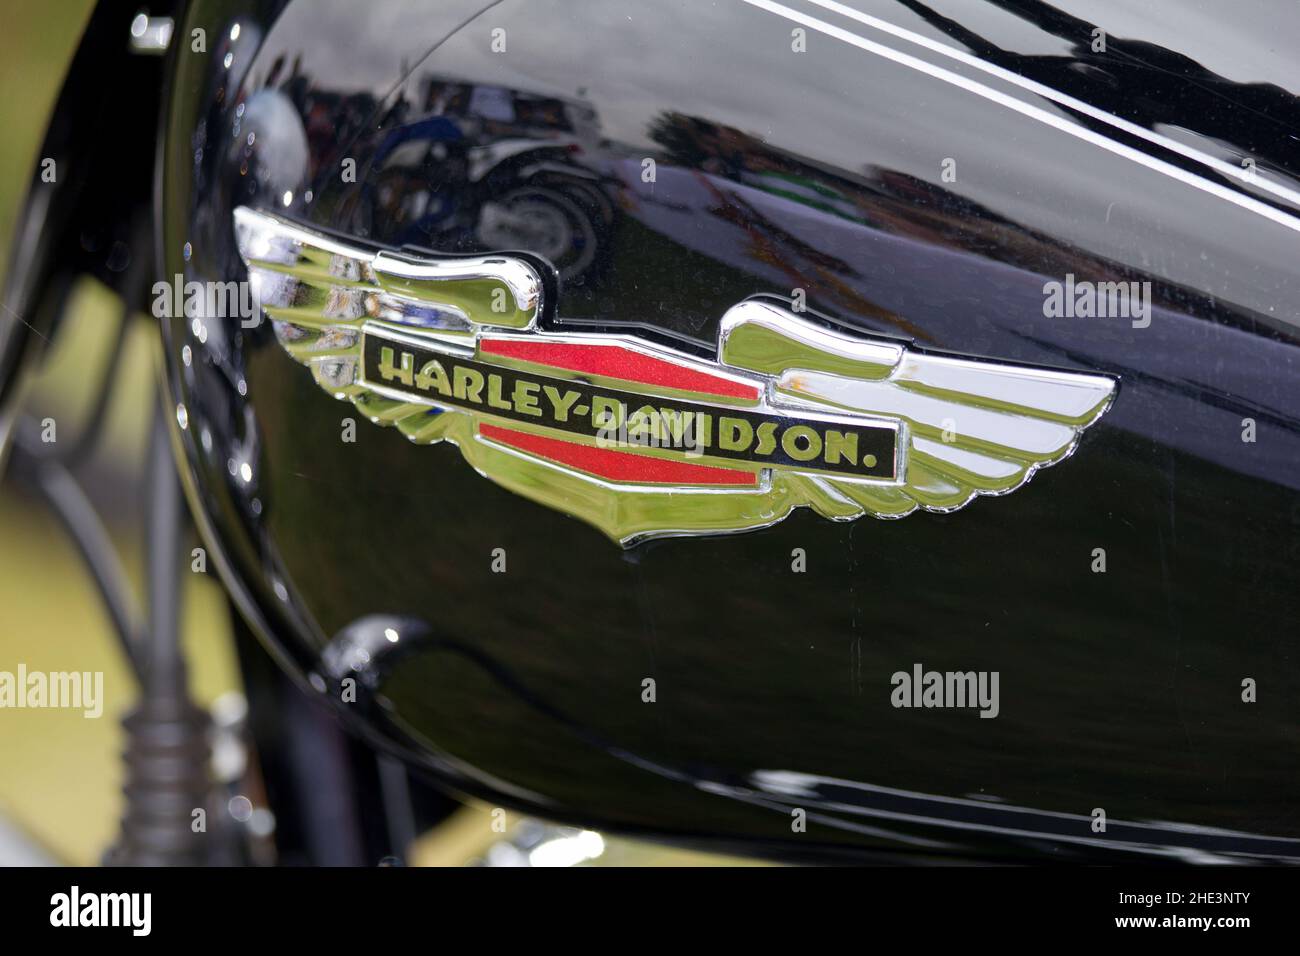 Dettaglio della moto Harley-Davidson, logo del serbatoio benzina per moto Foto Stock